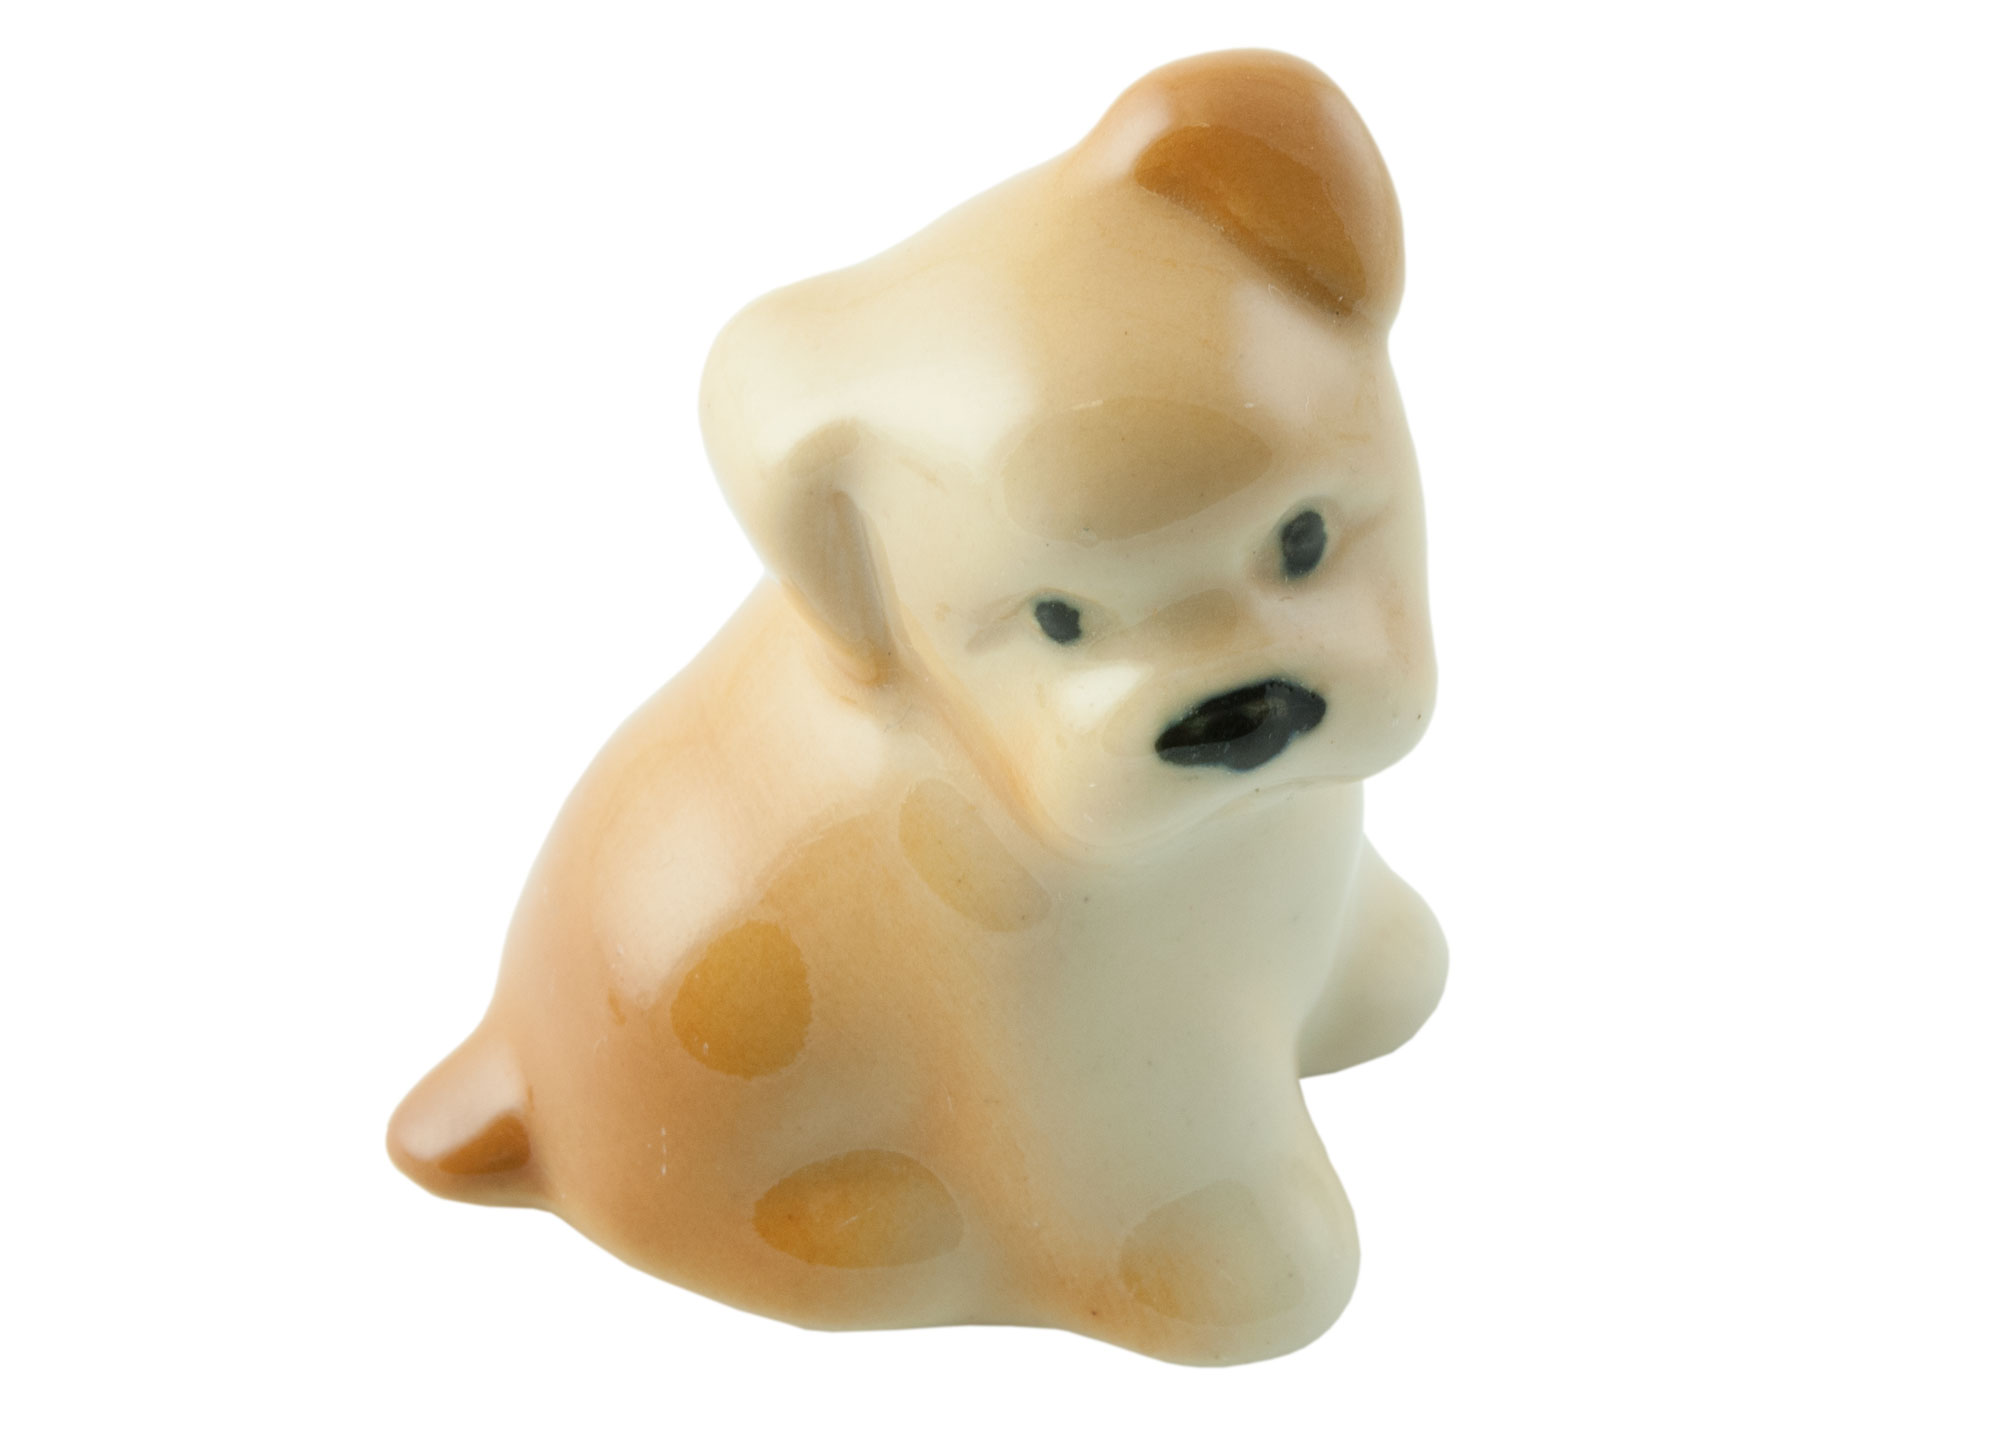 Buy Labrador Puppy Porcelain Figurine at GoldenCockerel.com